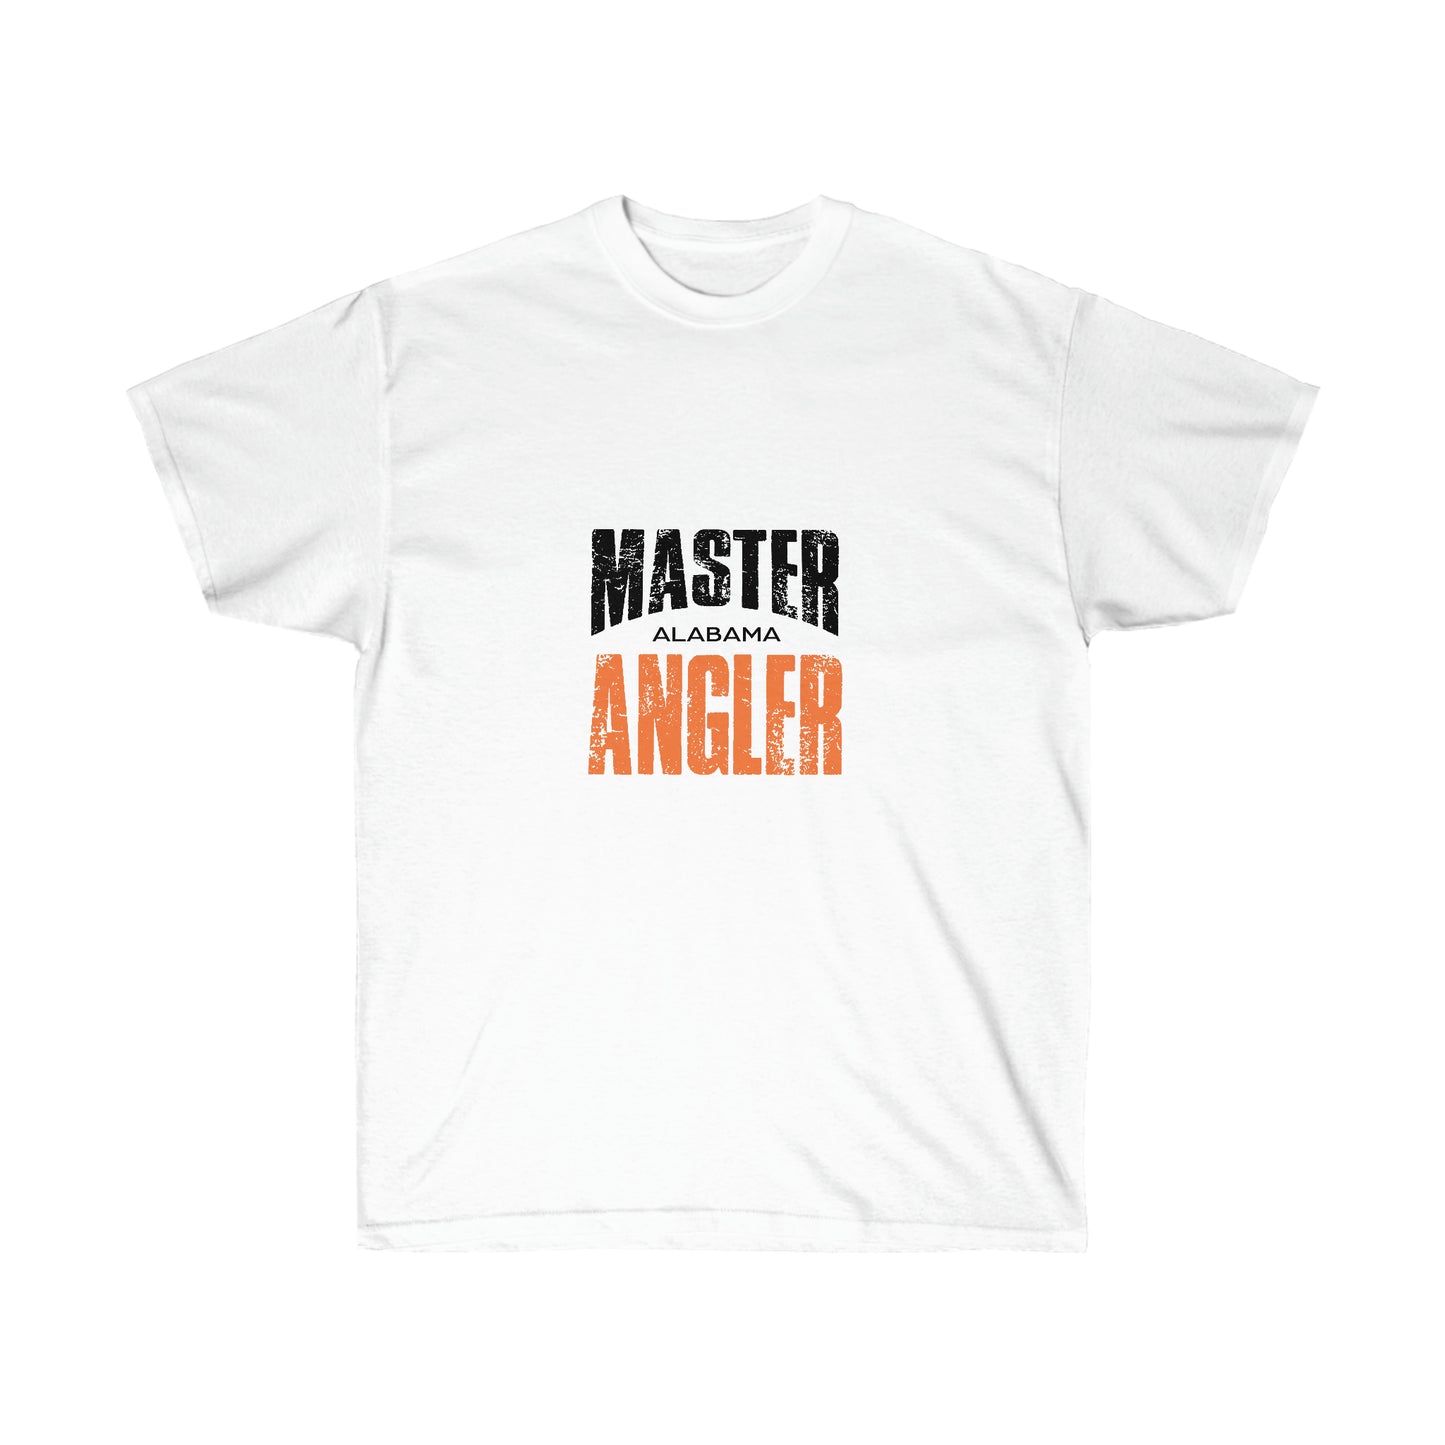 Alabama Master Angler - Square Orange